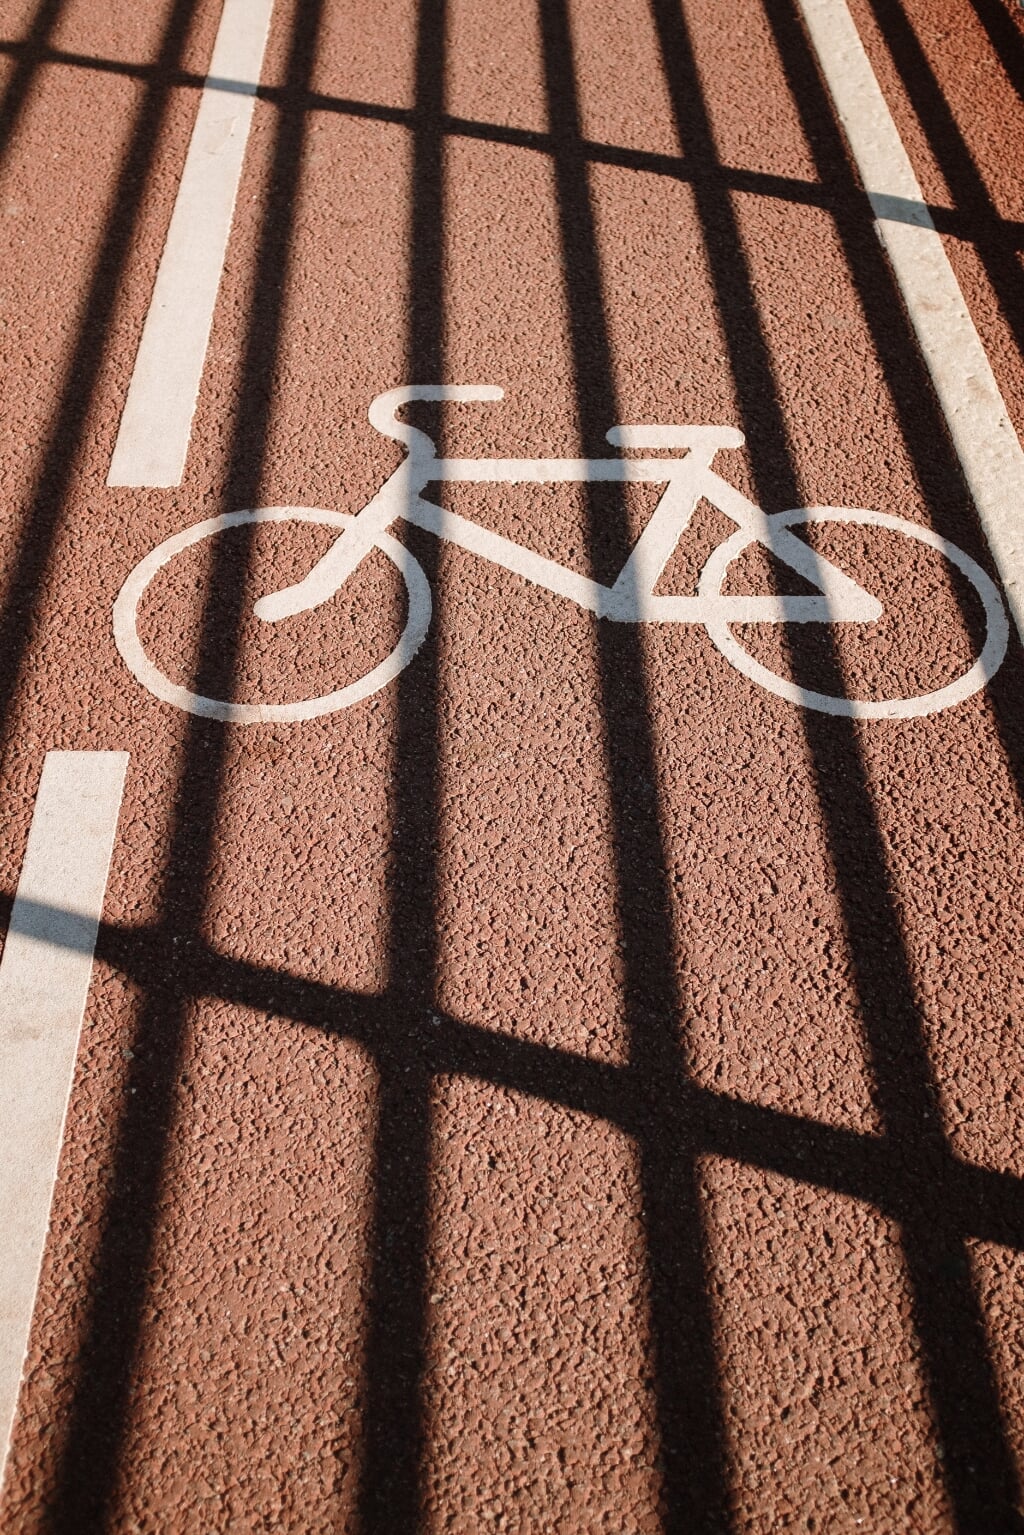 Werksaam vernieuwt het asfalt van de rijbaan en het fietspad.